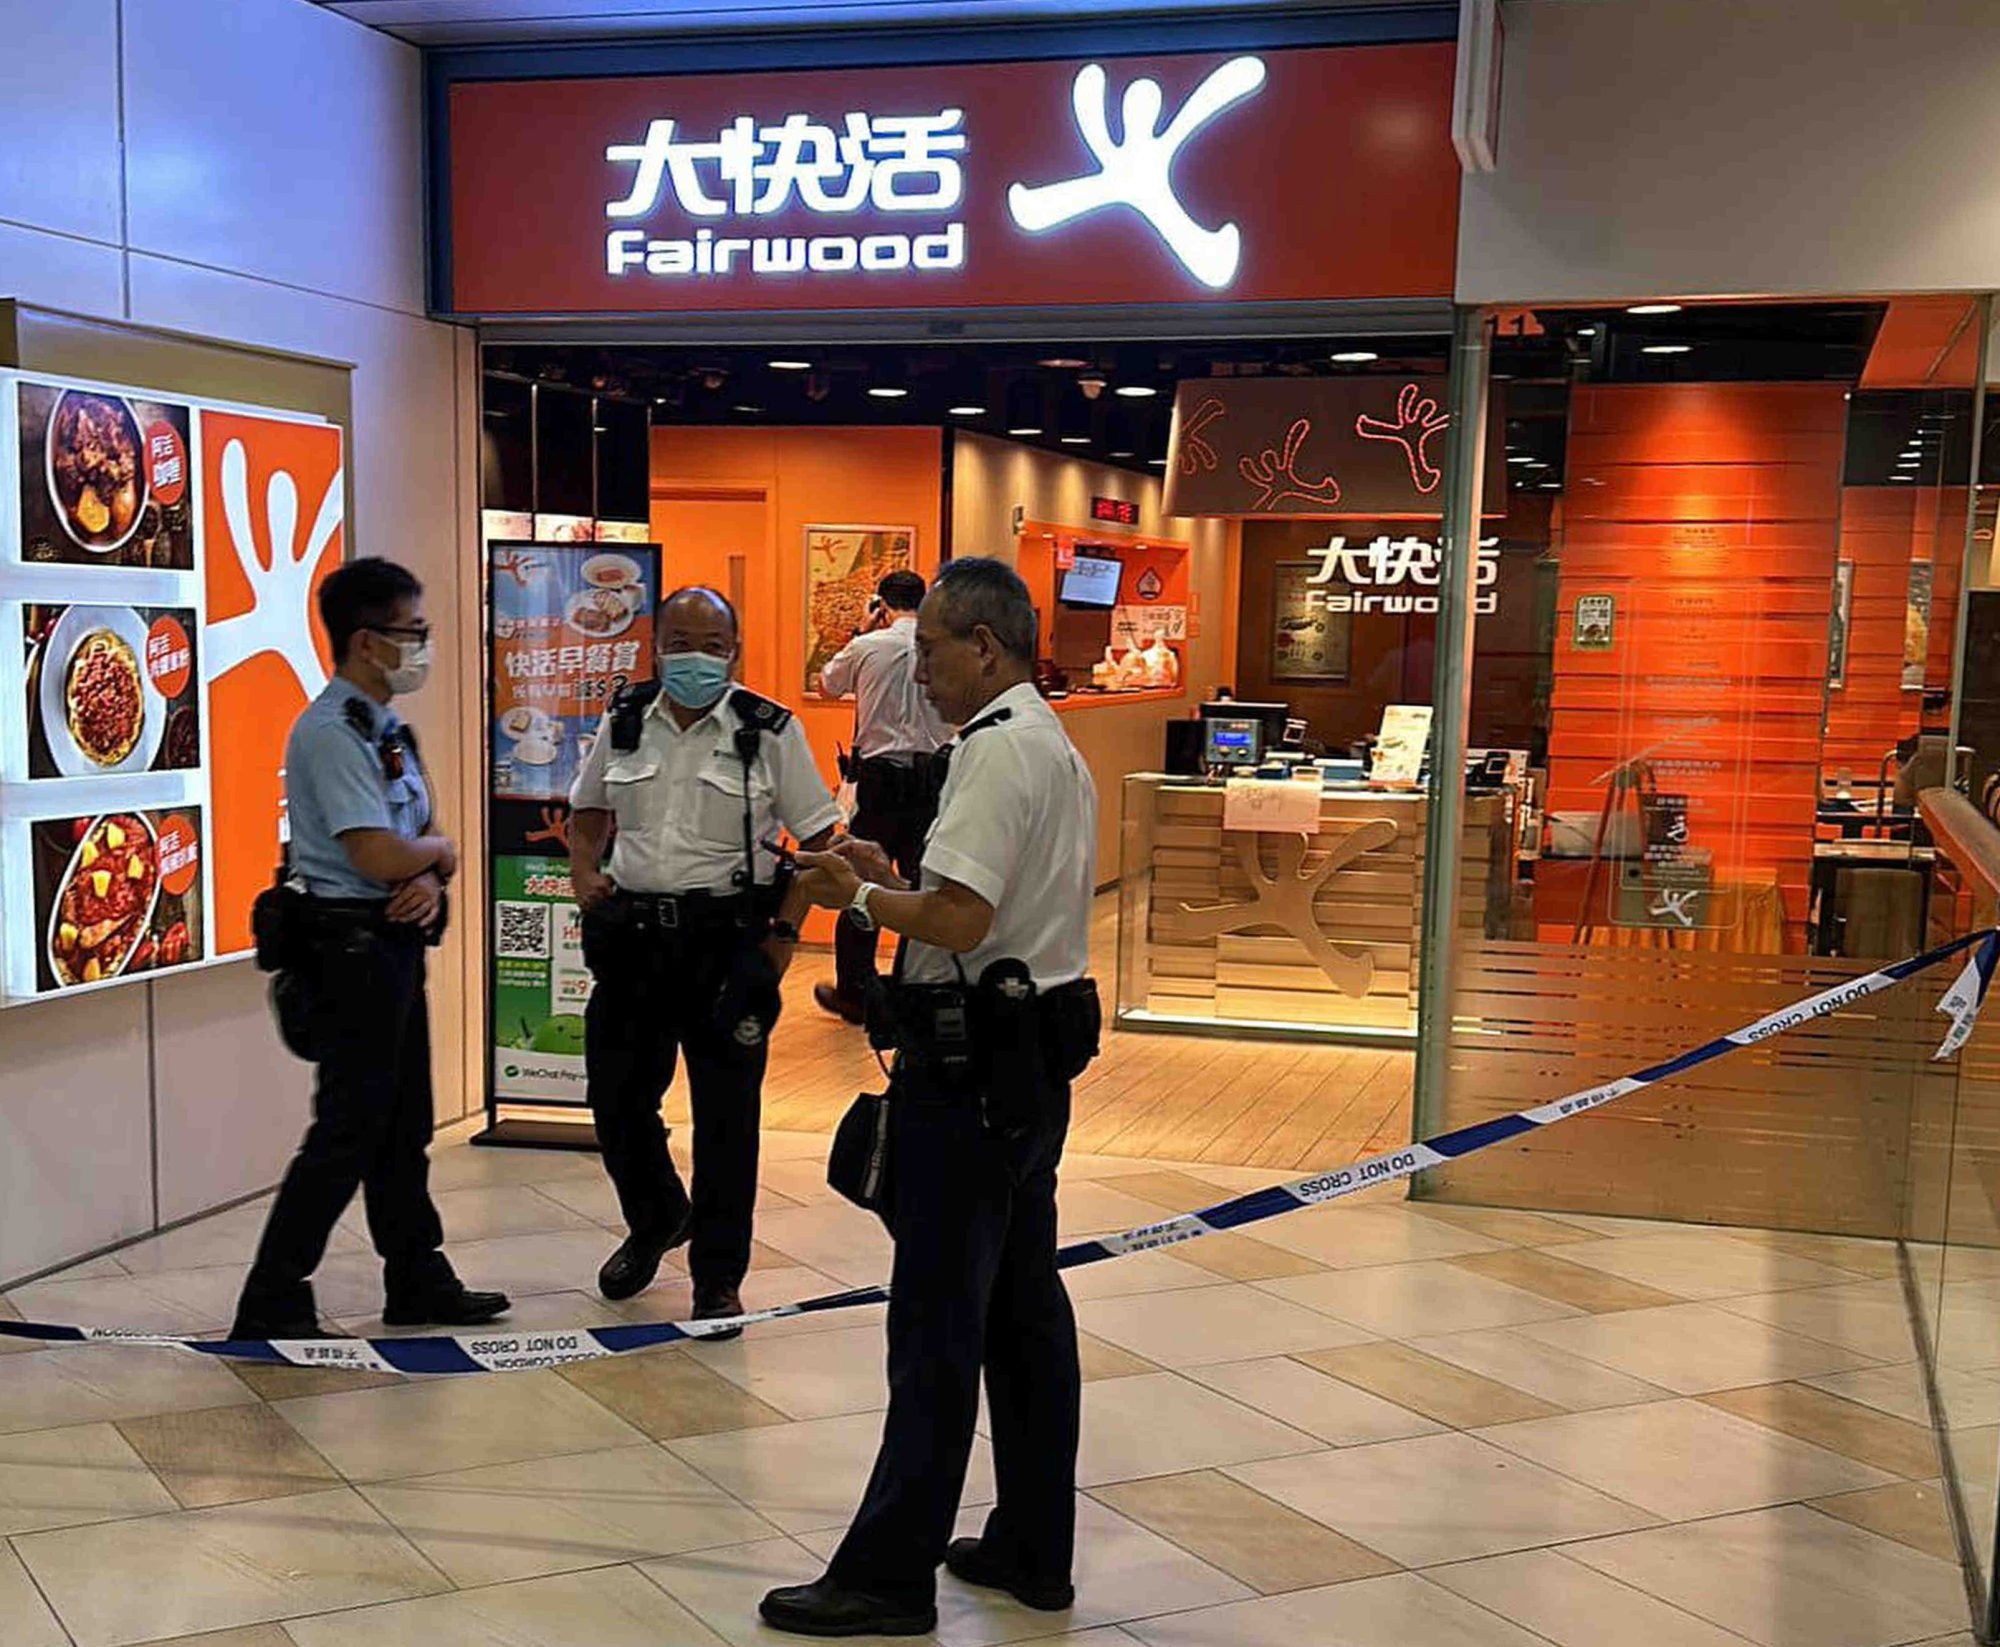 Transeúntes ayudan a someter a un cuchillo en un establecimiento de comida rápida en un centro comercial de Hong Kong